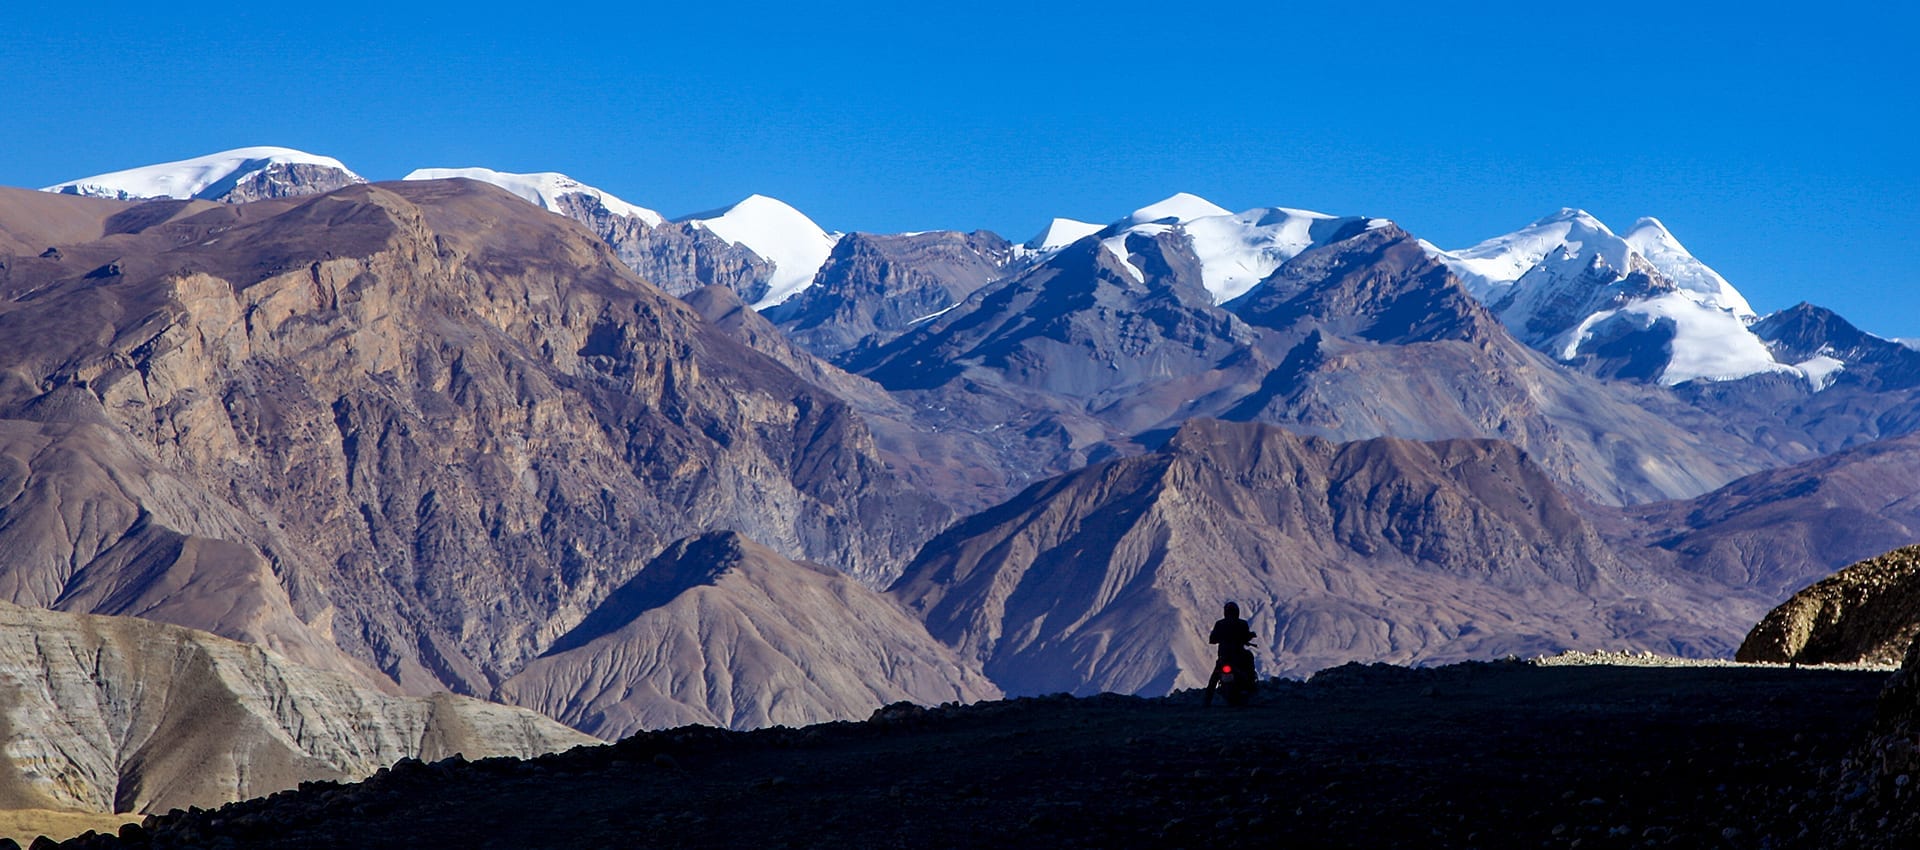 Vraag de brochure aan van de motorreis naar Upper-Mustang in Nepal en laat je inspireren